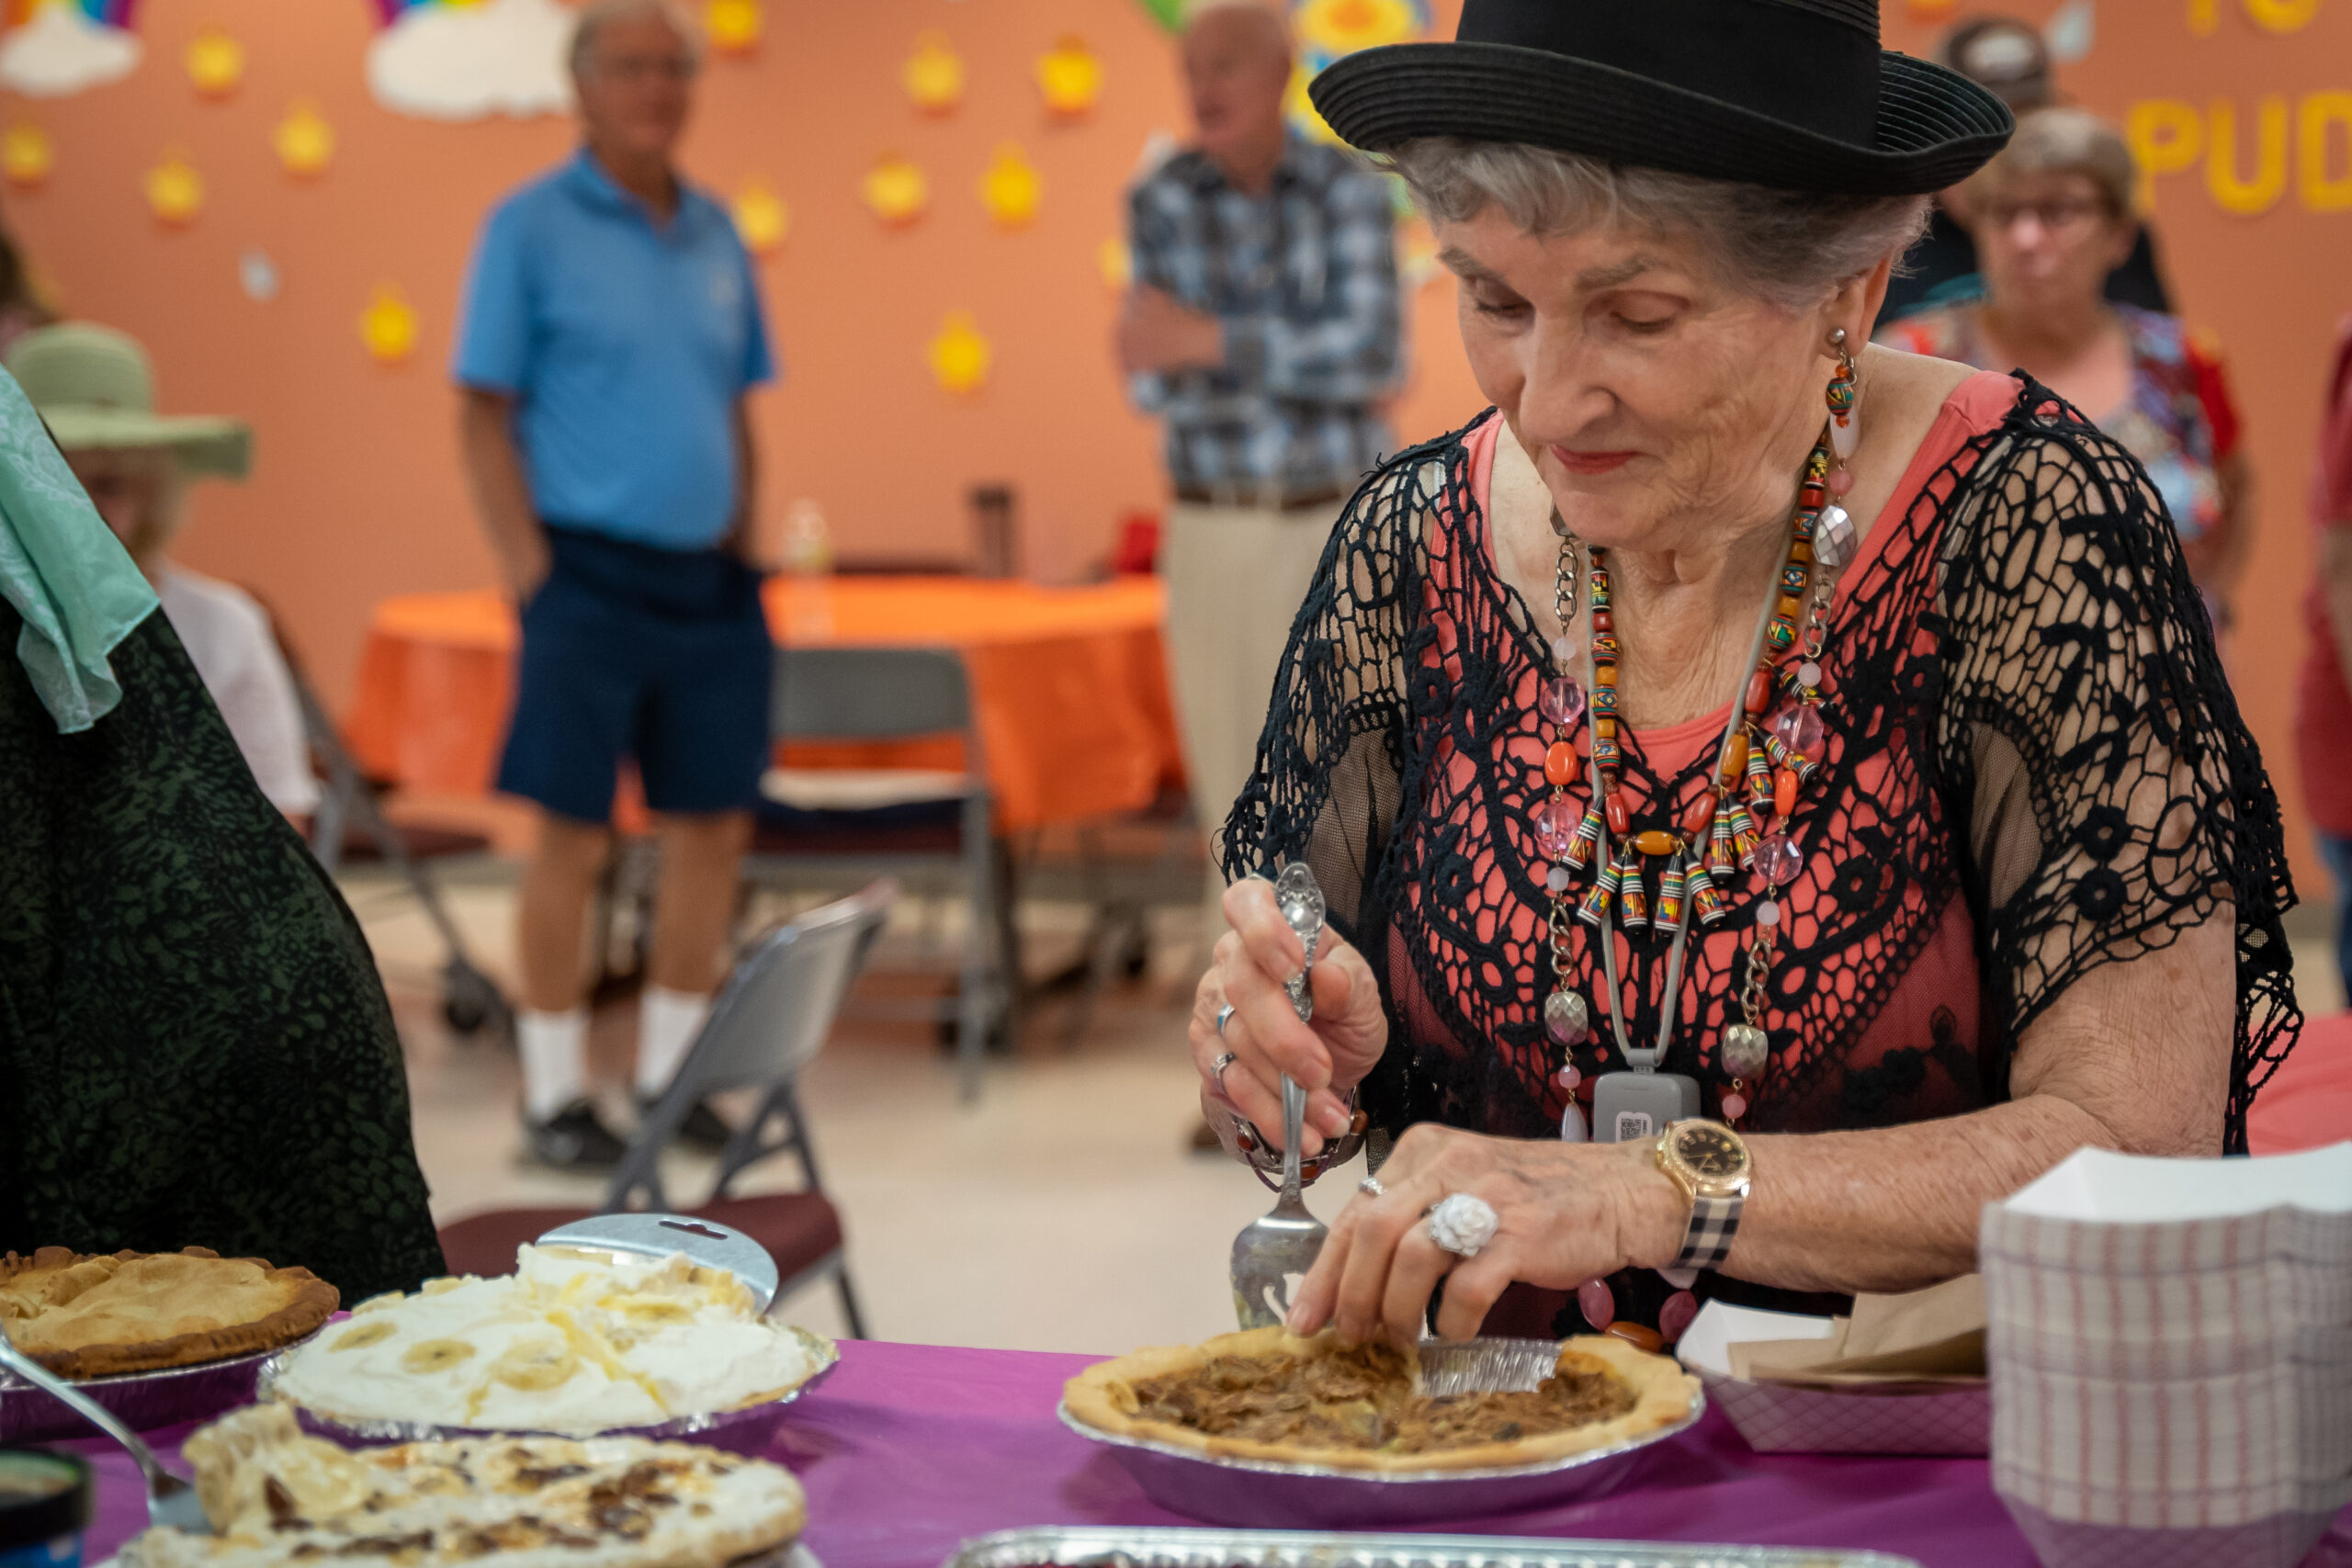 Senior center pie and ice cream social 2022